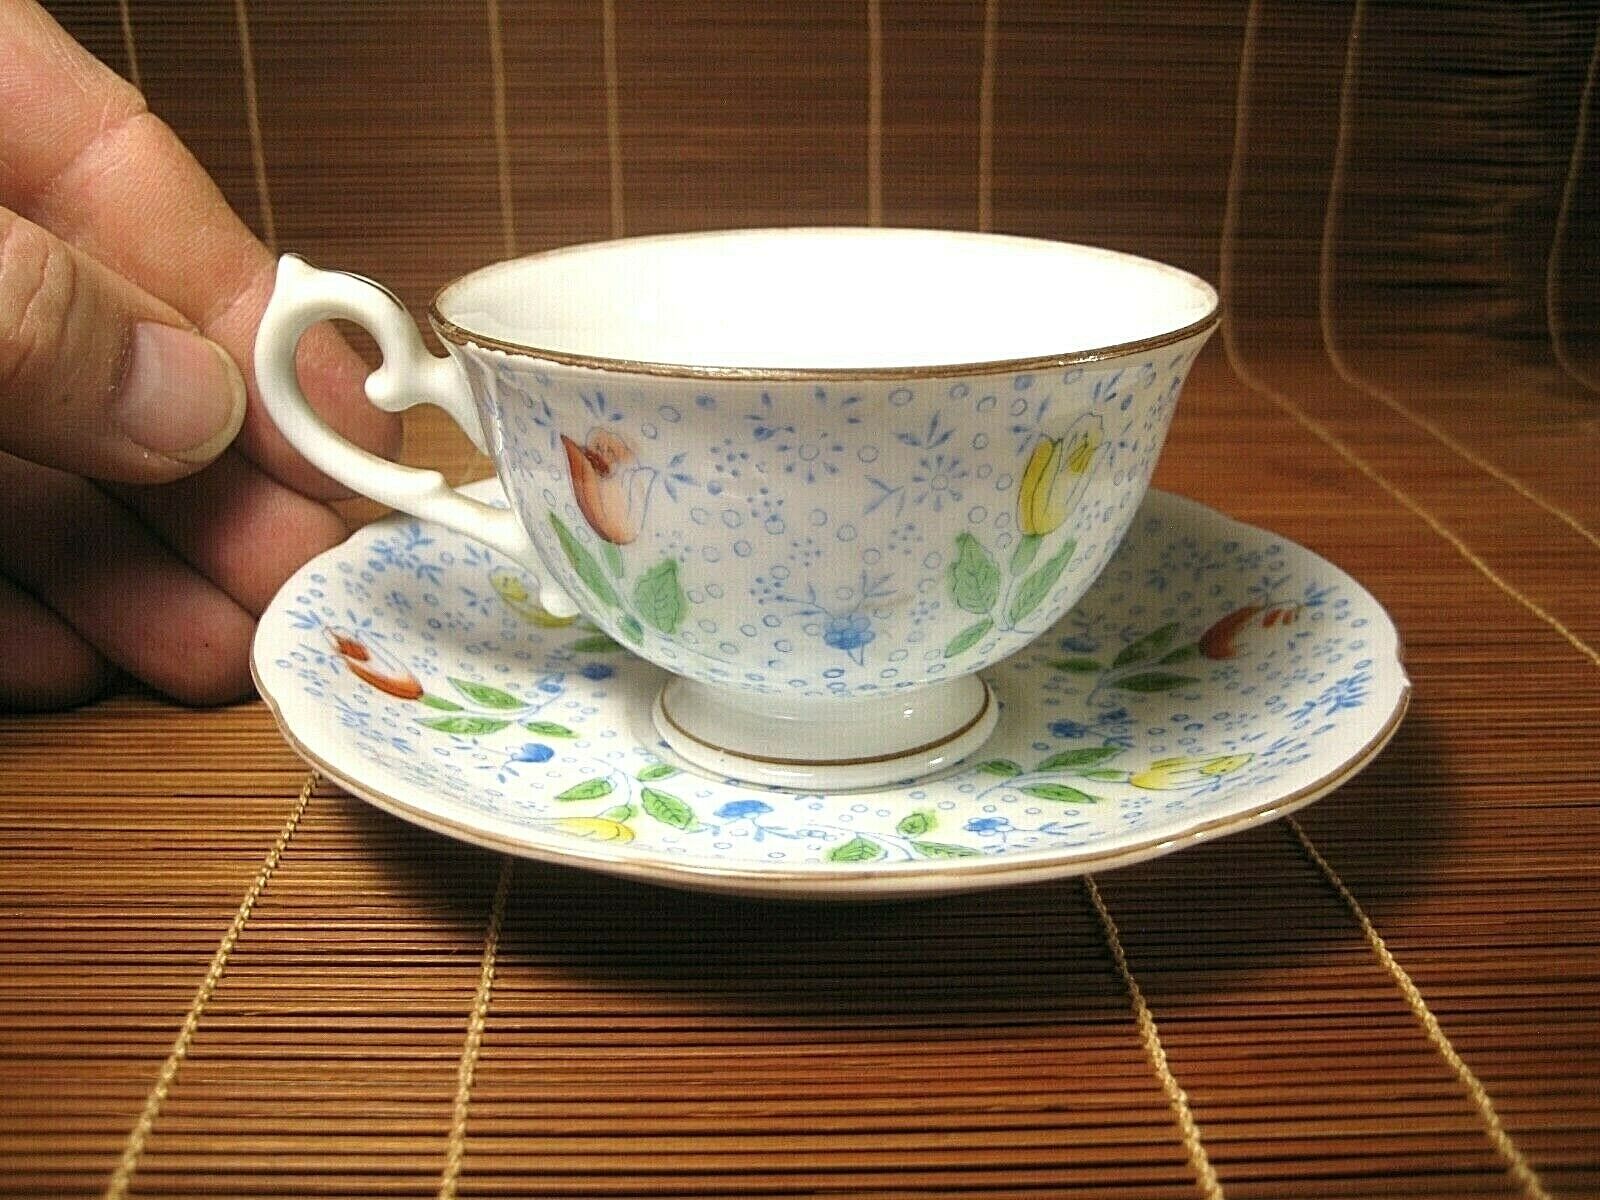 Tea Cup & Saucer Sets in Drinkware 